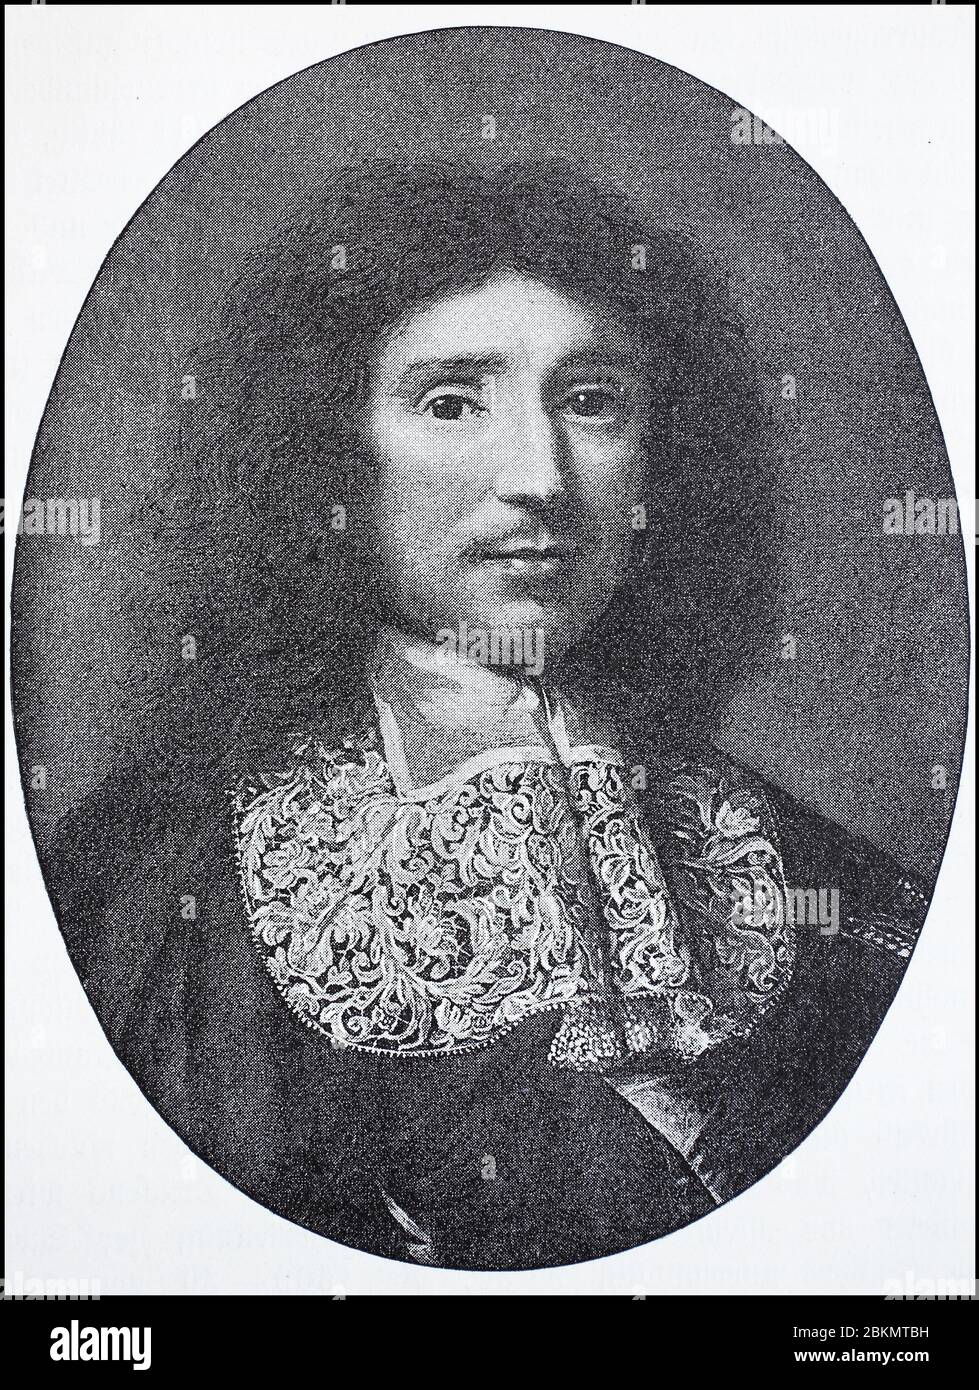 Jean-Baptiste Colbert, Marchese di Seignelay, 29 agosto 1619 - 6 settembre  1683, è stato uno statista francese e fondatore del mercantilismo, può  essere considerato economia pre-classica. Sotto il Re Sole Luigi XIV